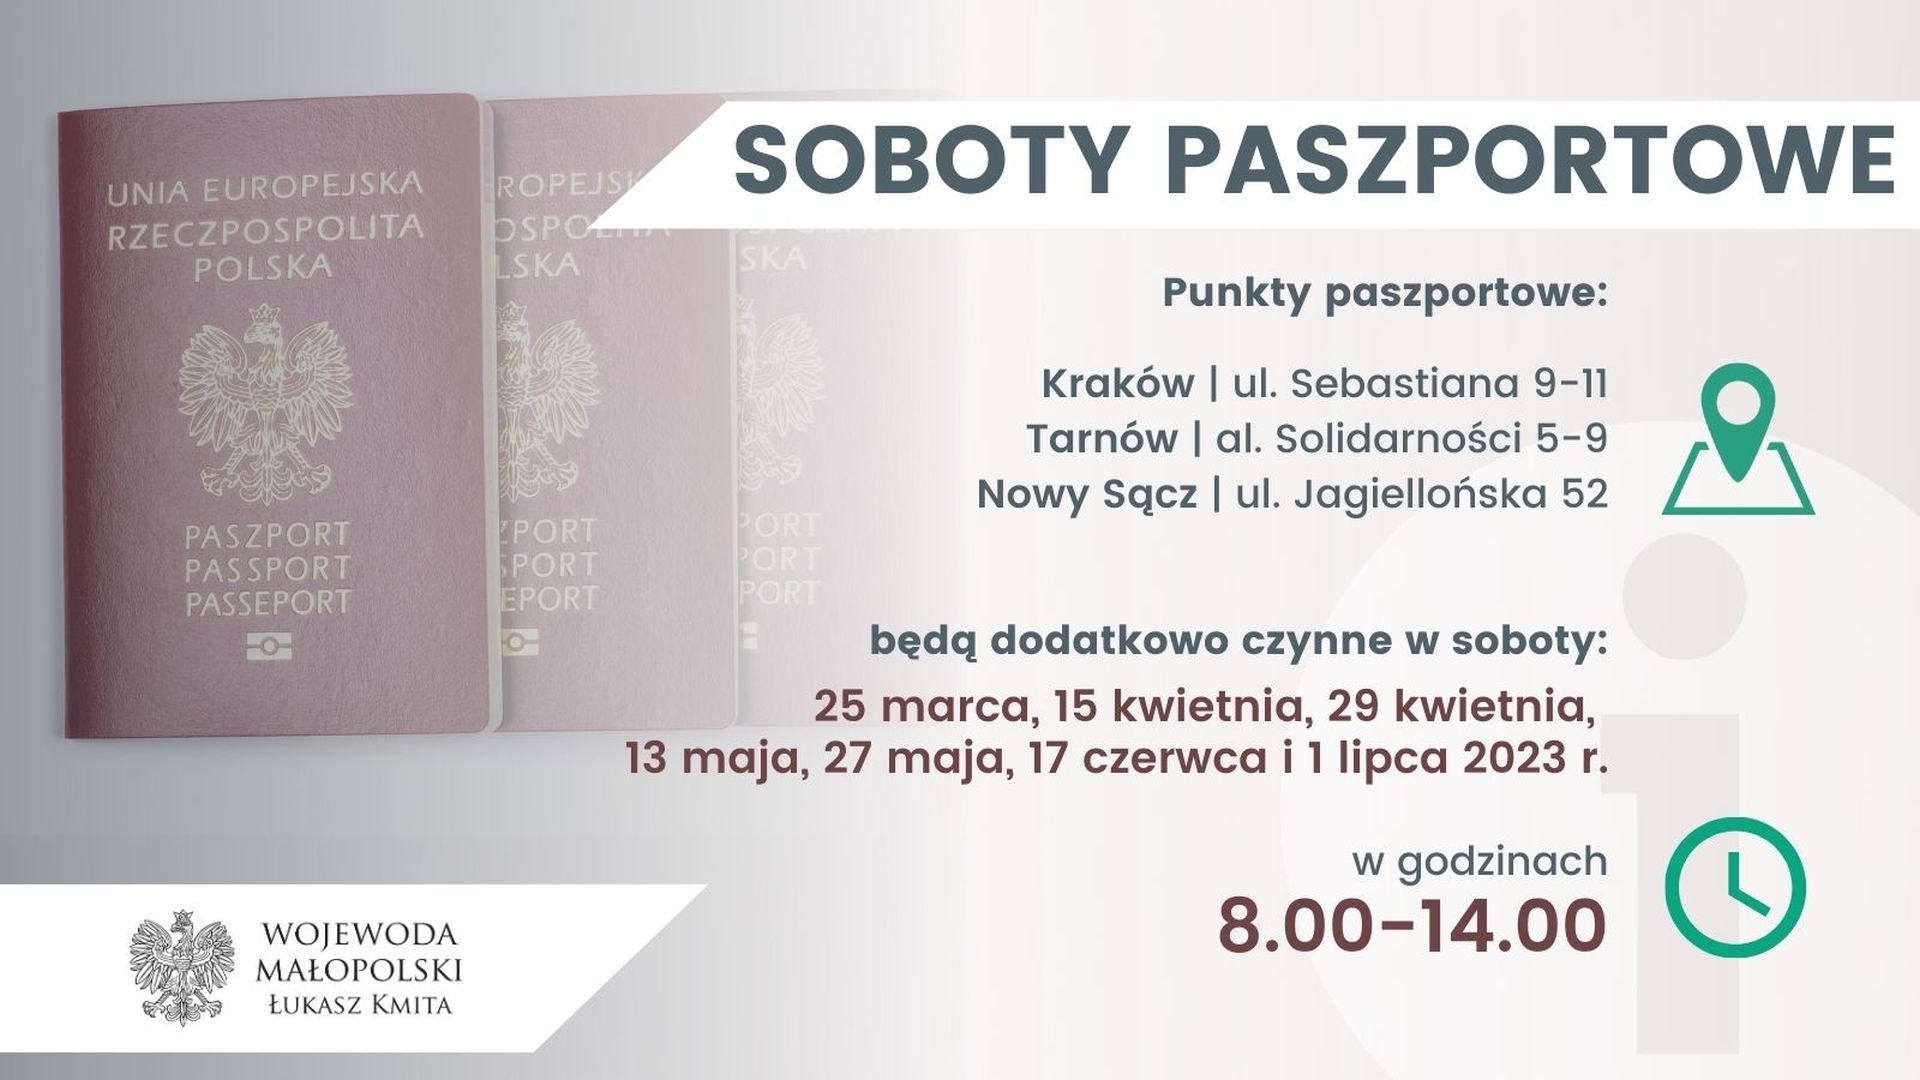 Grafika dotycząca sobót paszportowych, które będą się odbywały w Małopolsce